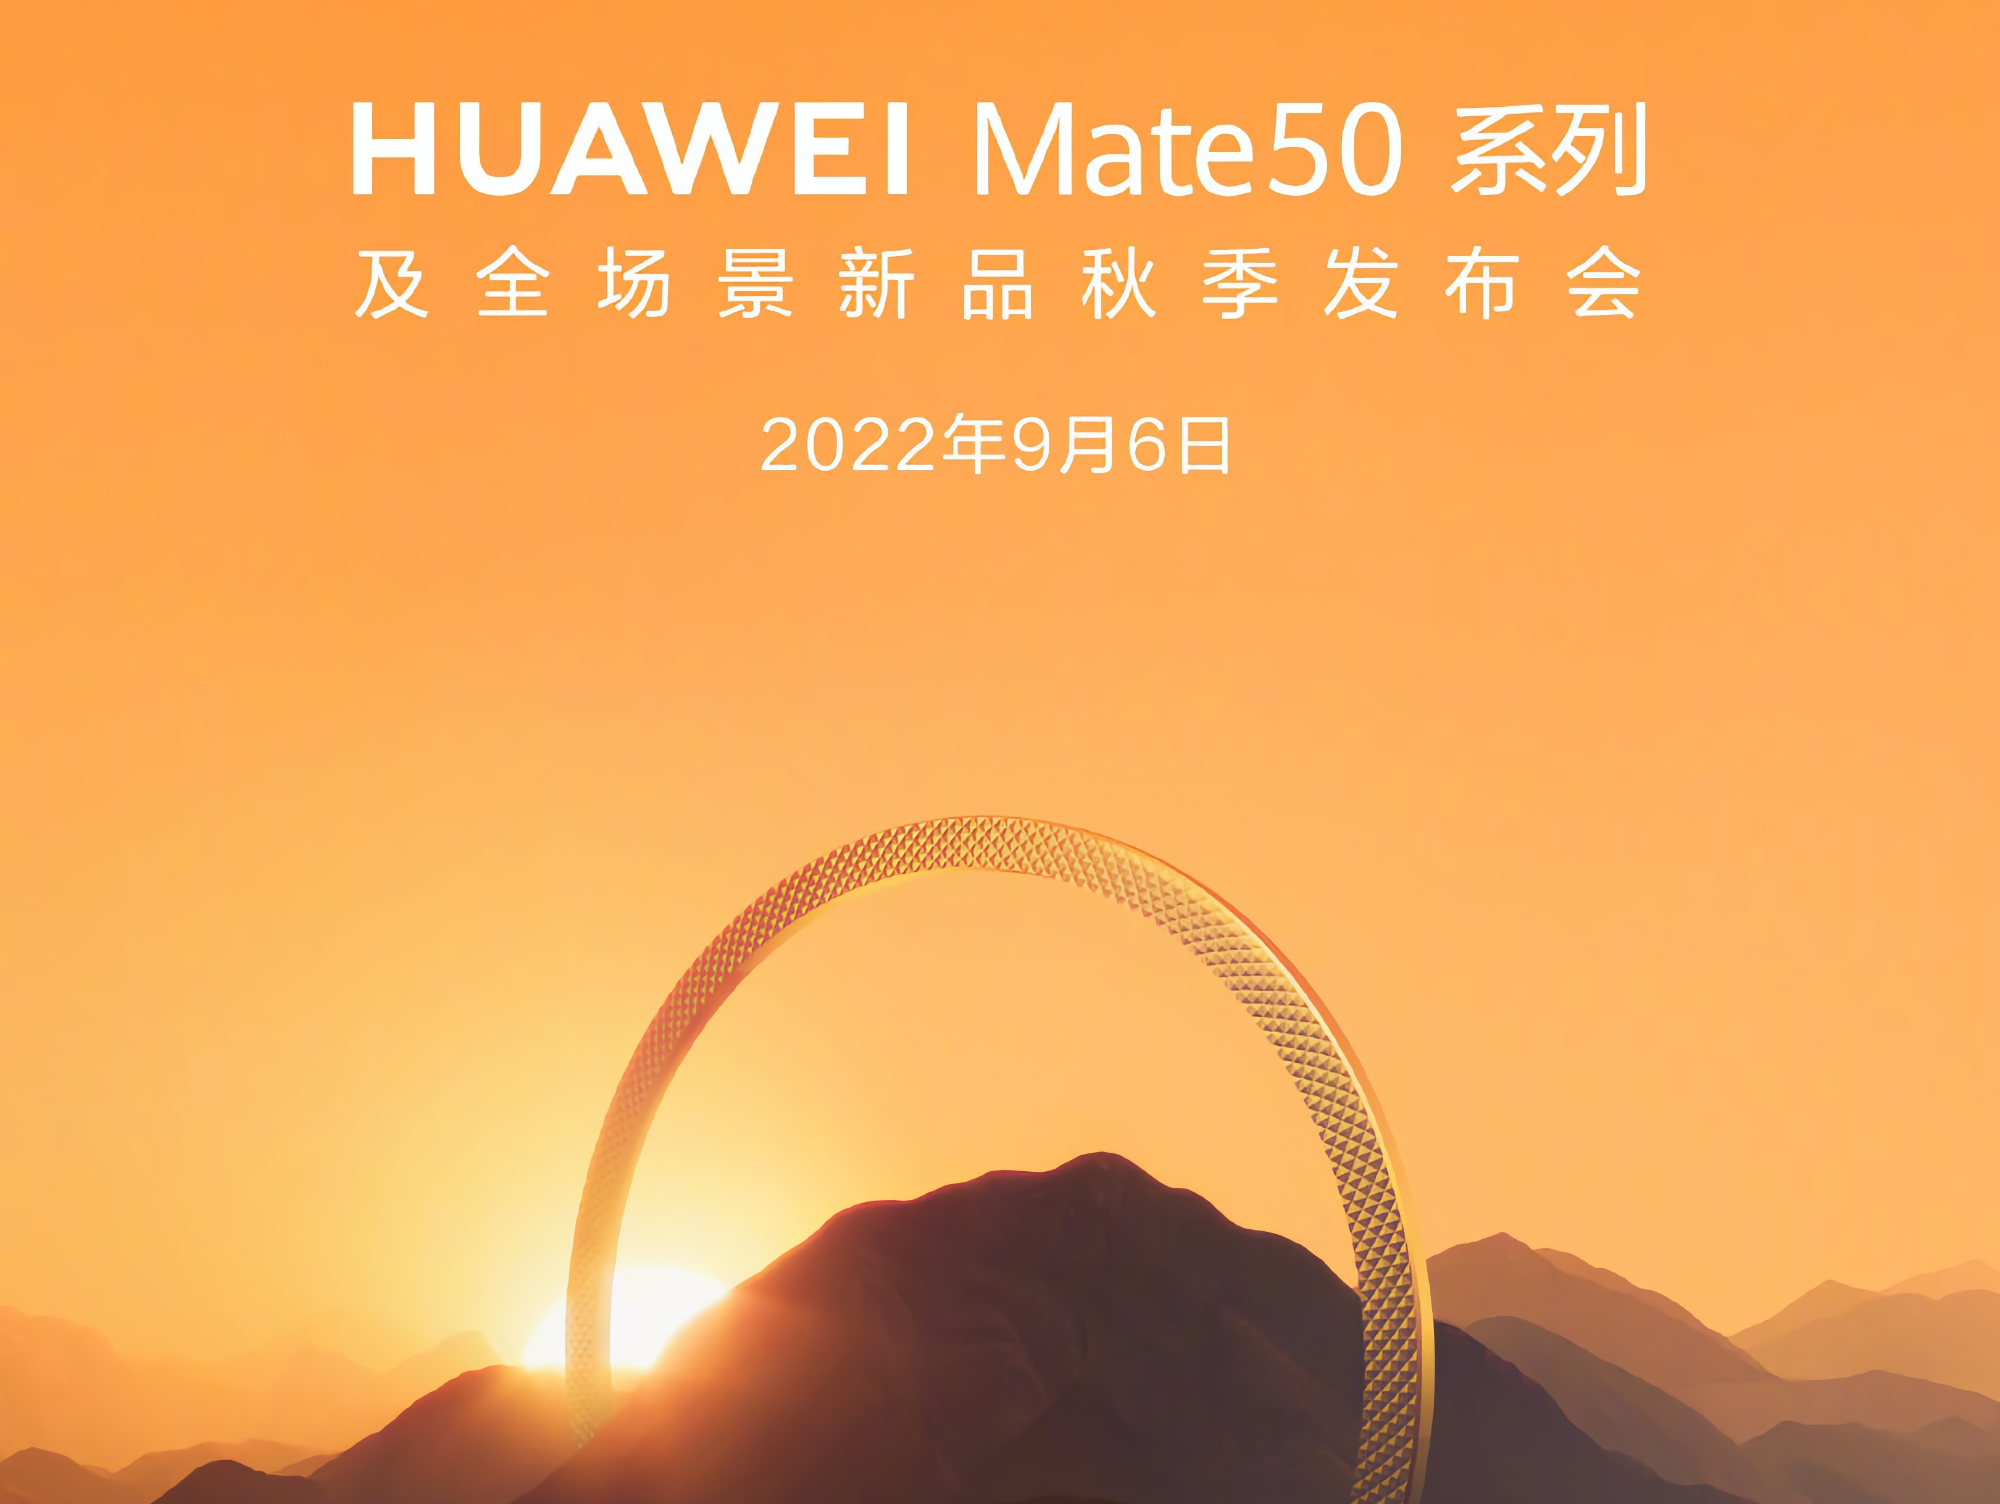 Oficjalnie: flagowa linia smartfonów Huawei Mate 50 zostanie zaprezentowana 6 września